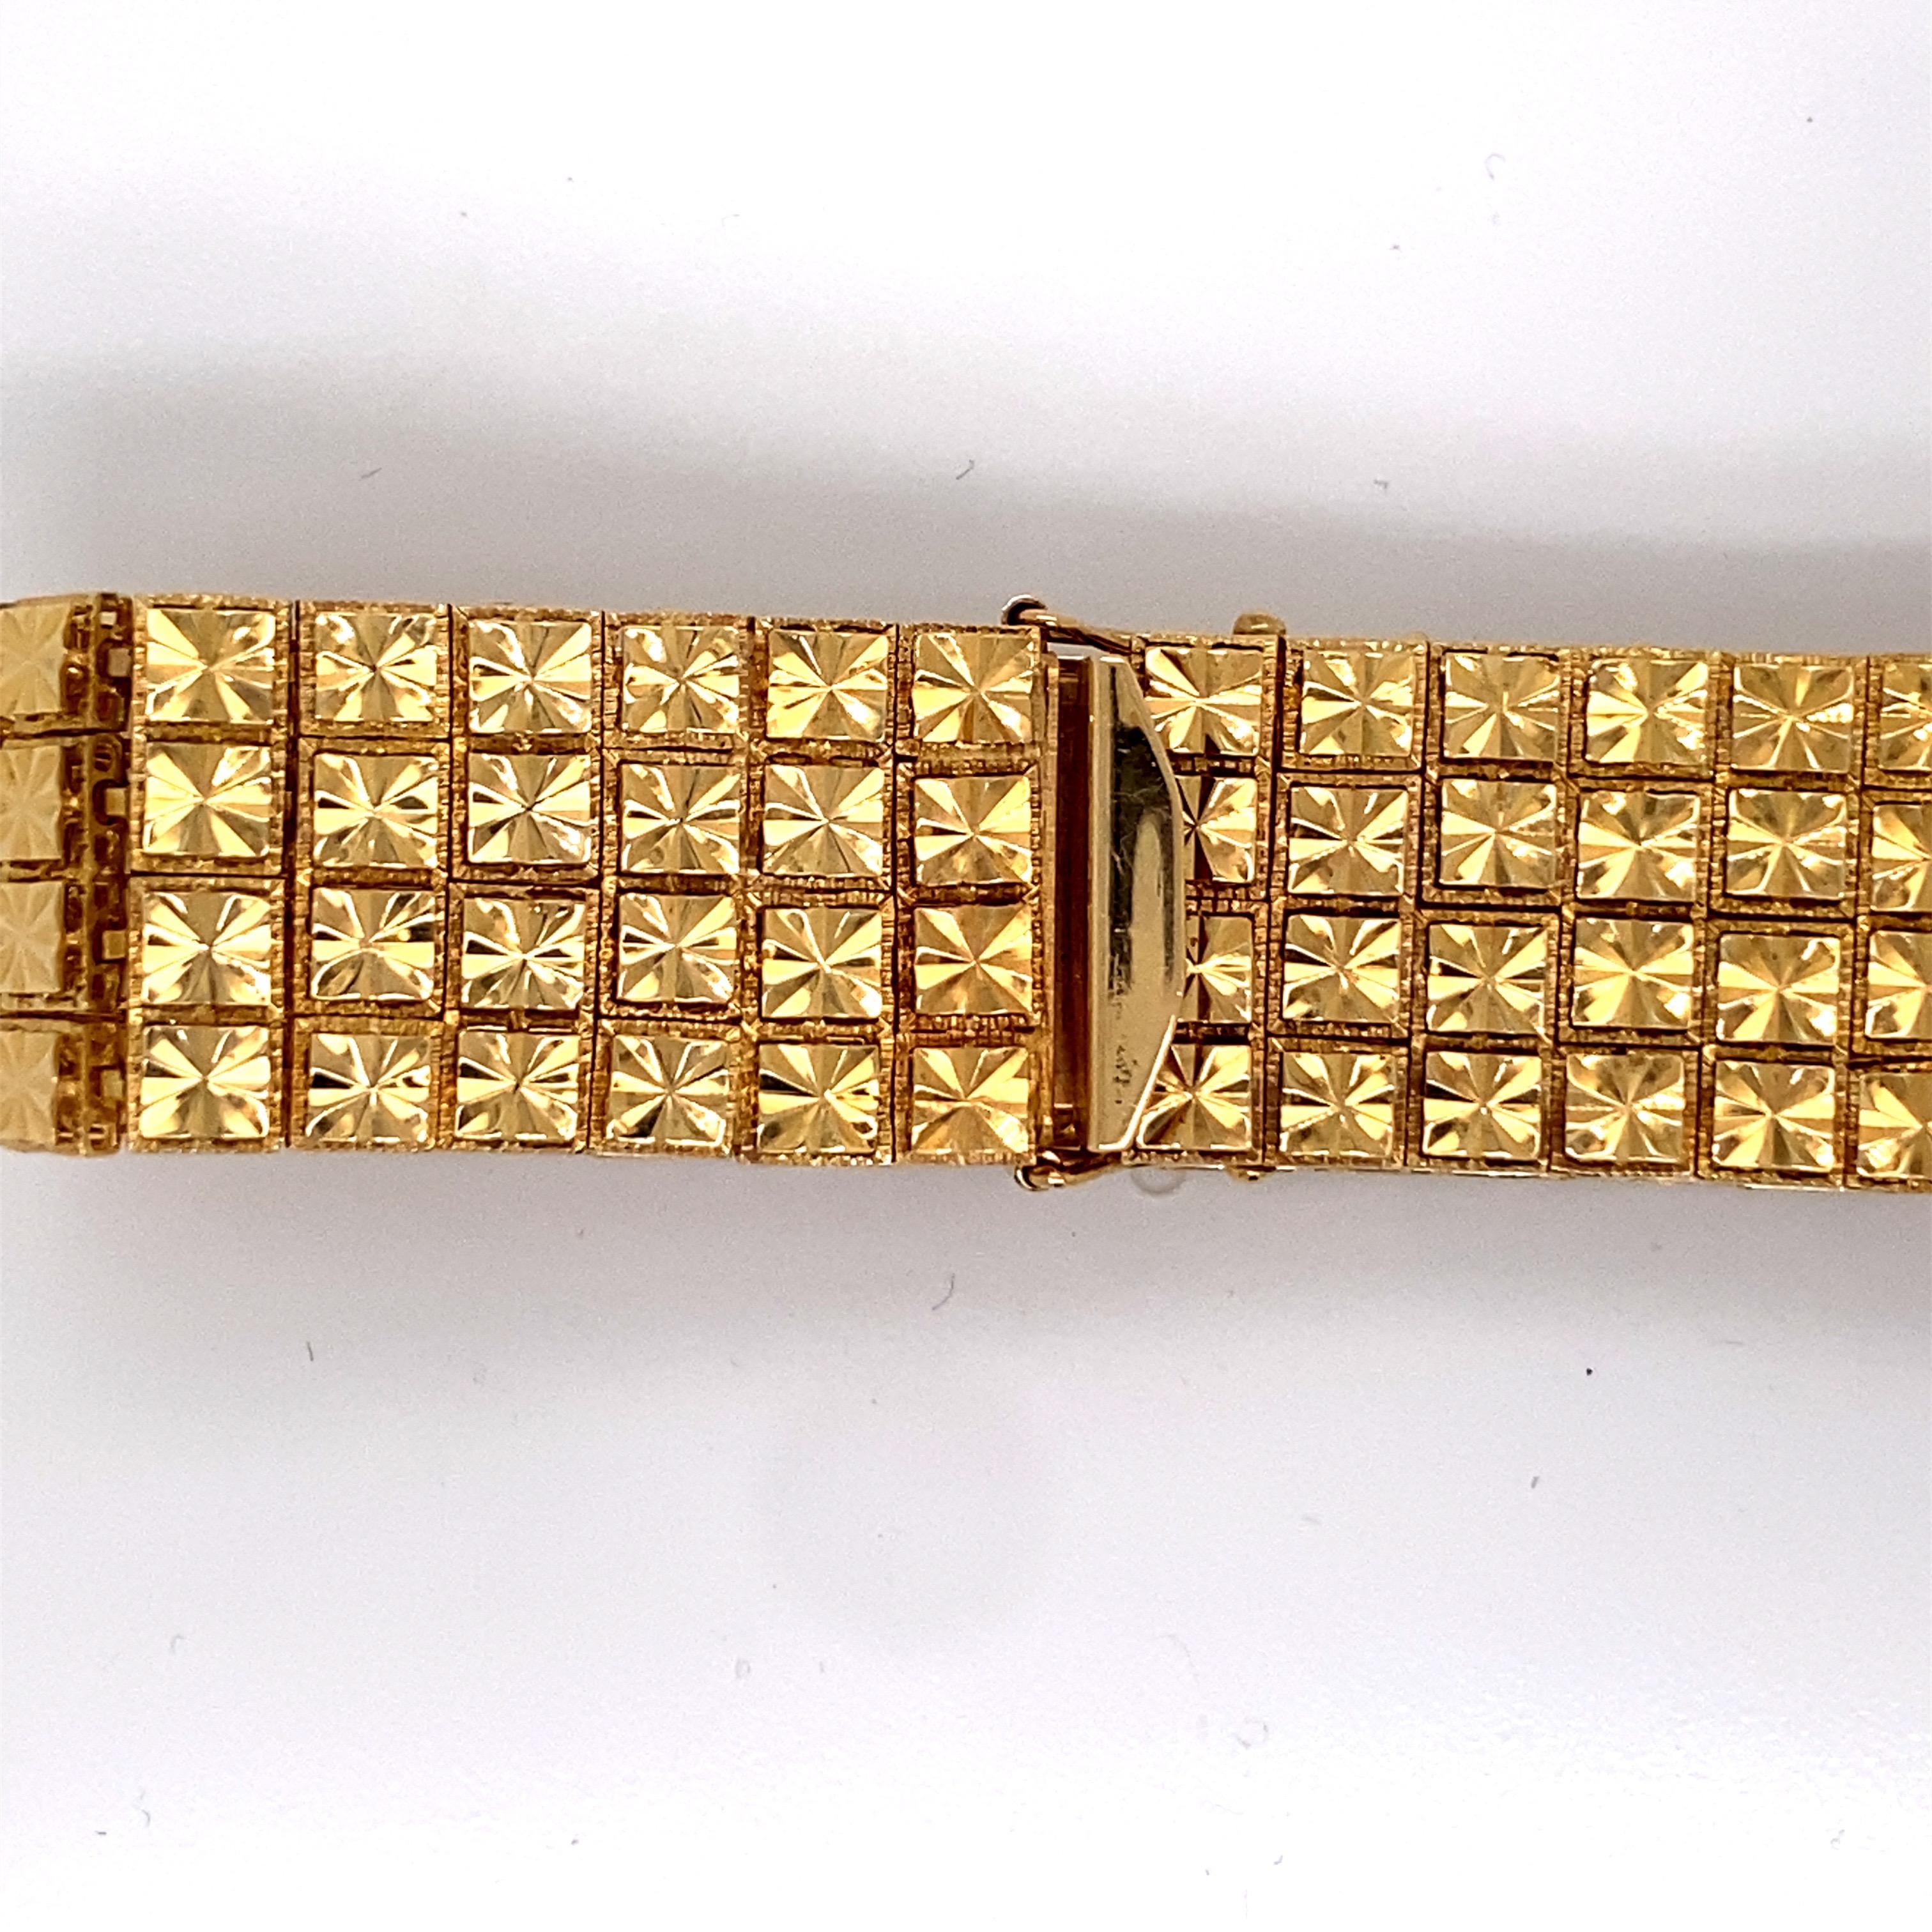 Vintage 1980s 14K Gelbgold Wide Link Bracelet - Das Armband misst 7,25 Zoll lang und .70 Zoll breit und hat einen versteckten Verschluss mit Druckknopf für einen kontinuierlichen Stil. Die Links haben Blumenmuster. Das Gewicht des Armbands beträgt